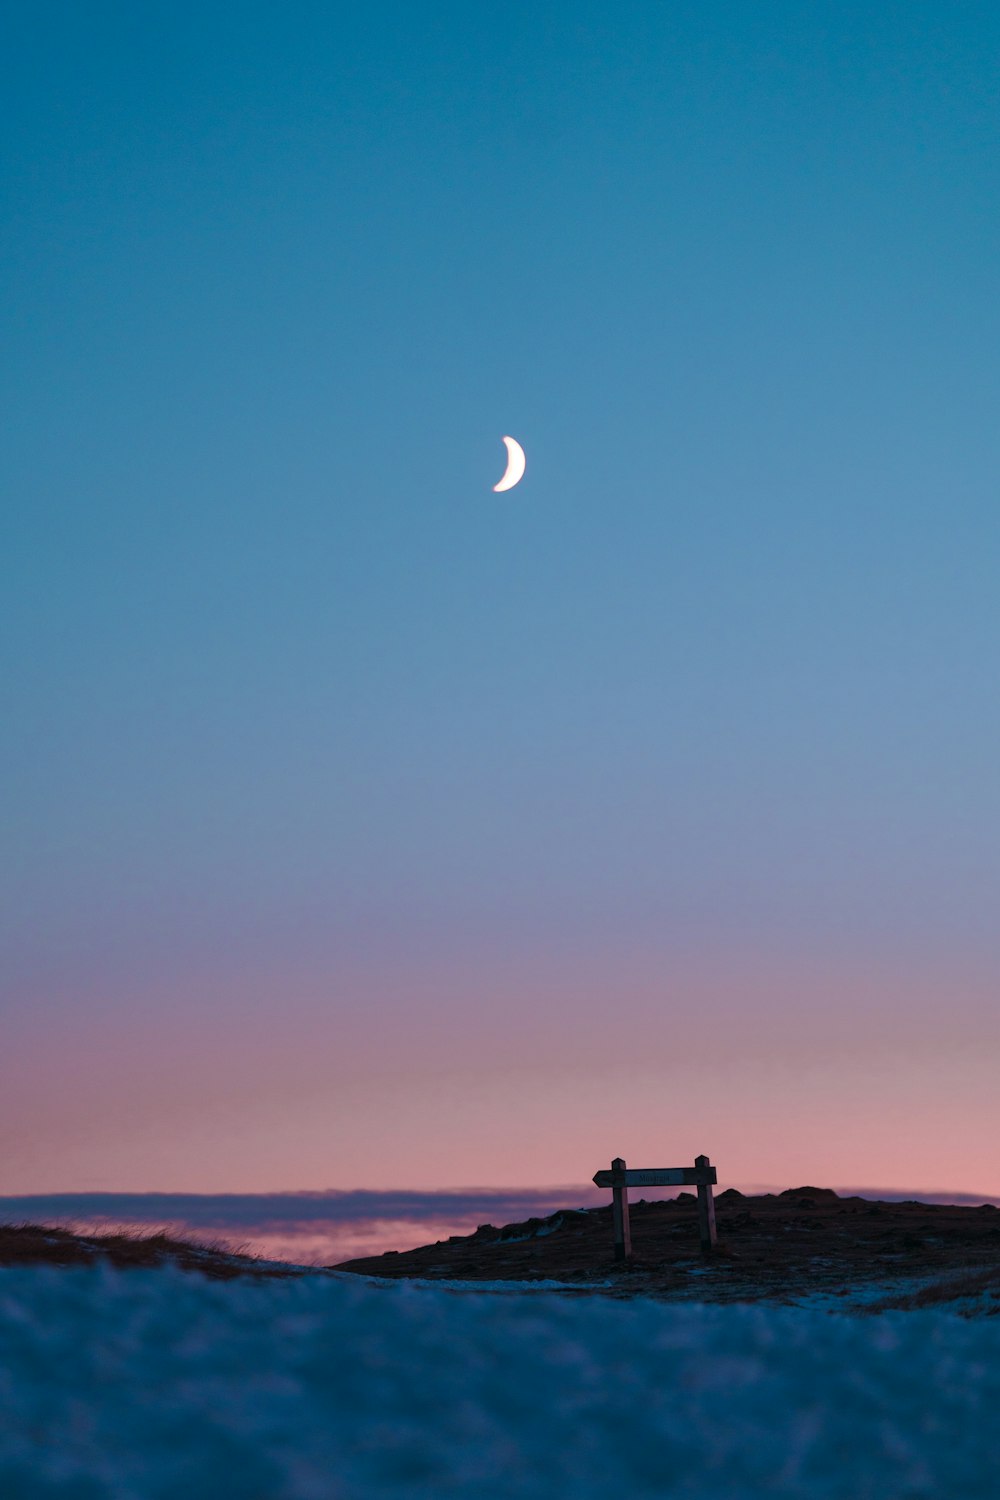 Un banco sentado en la cima de una playa de arena bajo una luna